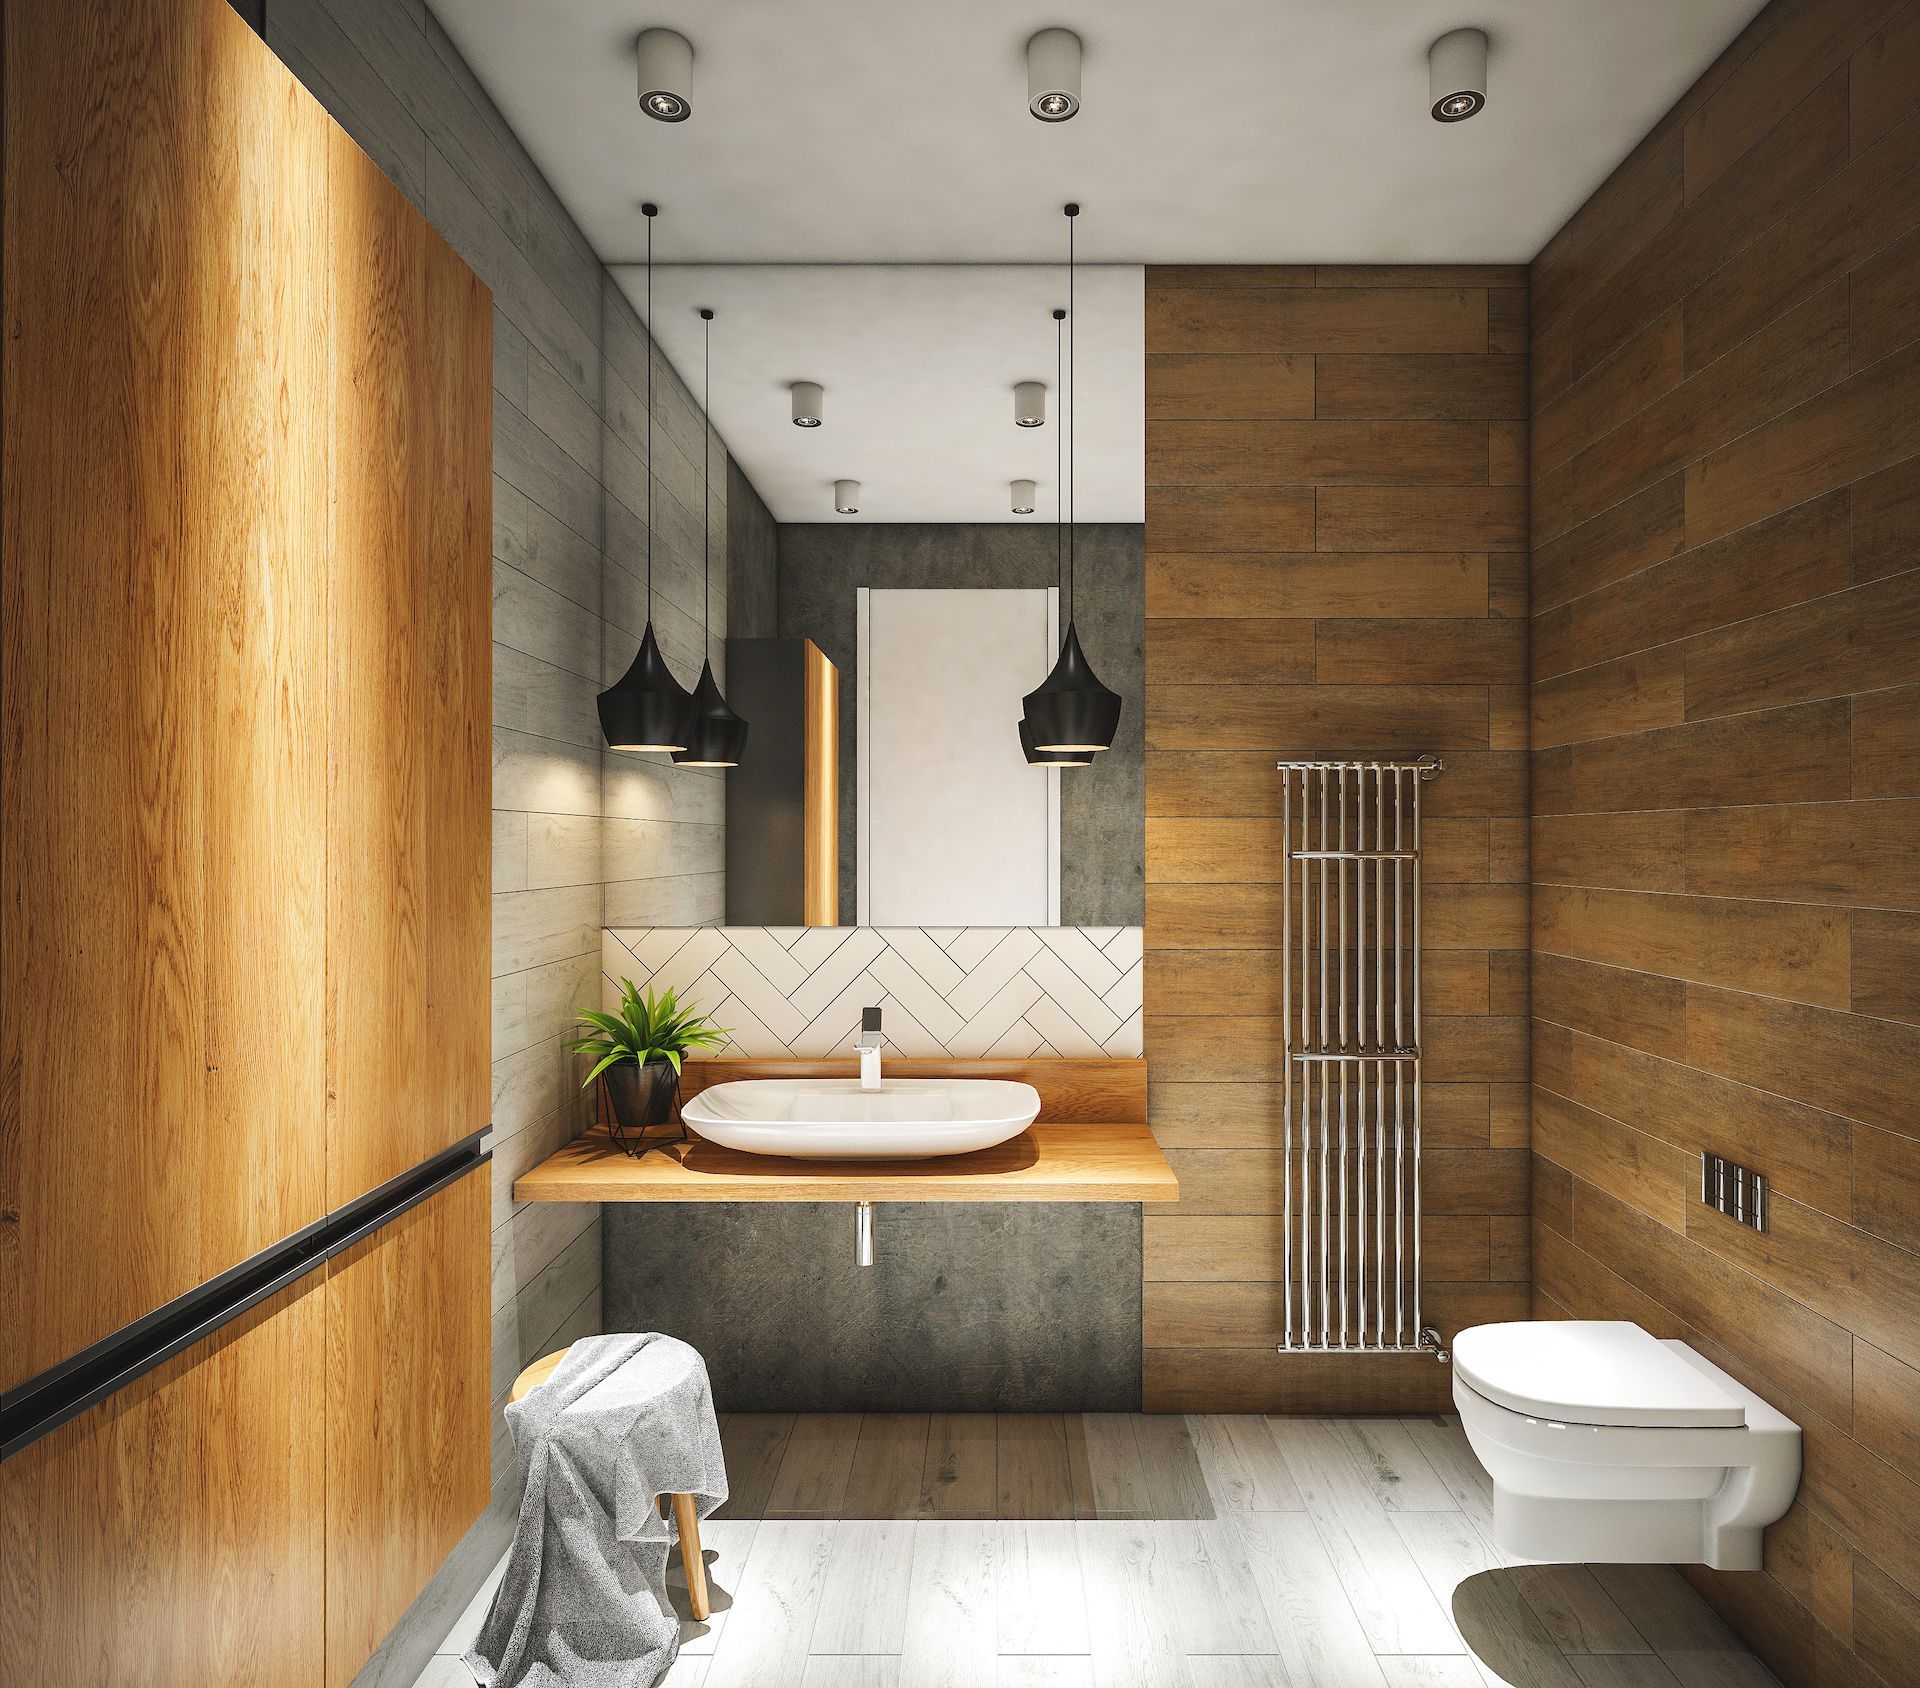 Salle de bains moderne avec murs et meubles en bois